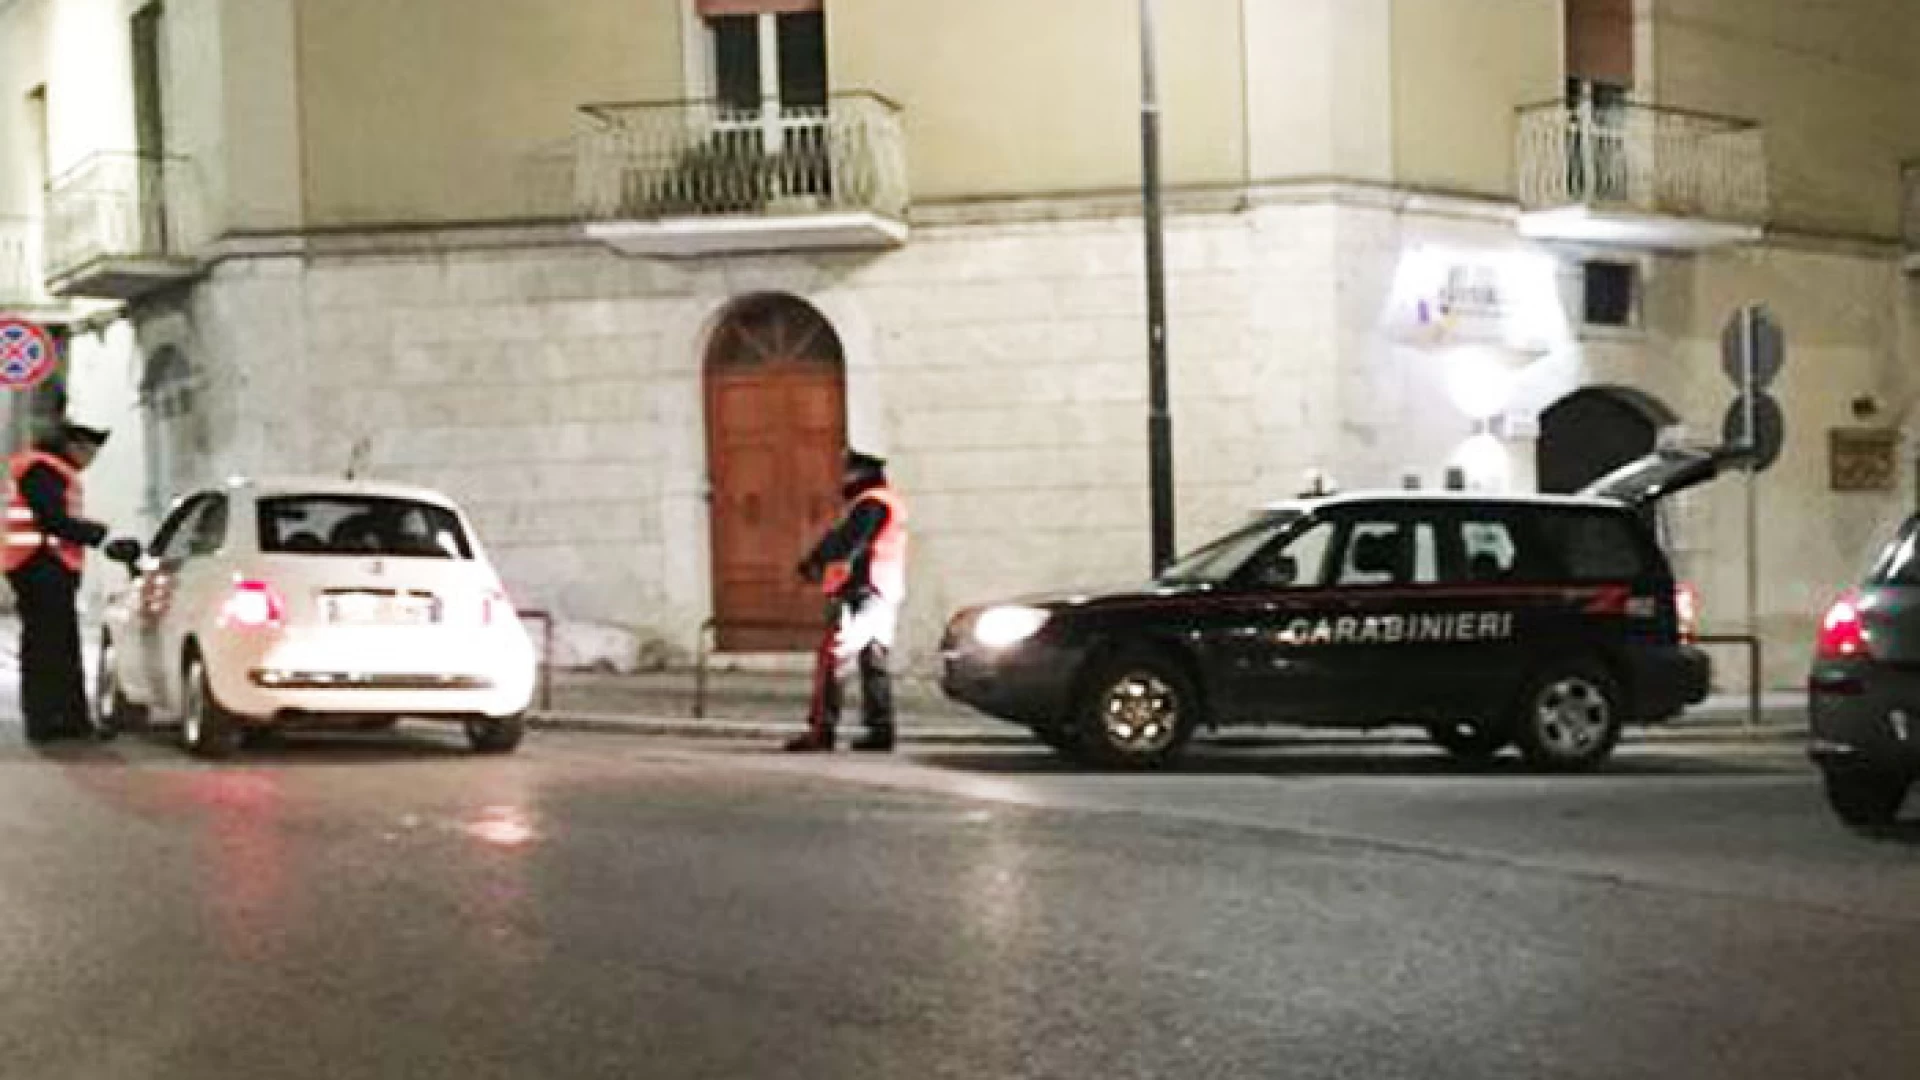 Isernia: pregiudicato campano per rapine e furti arrestato dai Carabinieri.